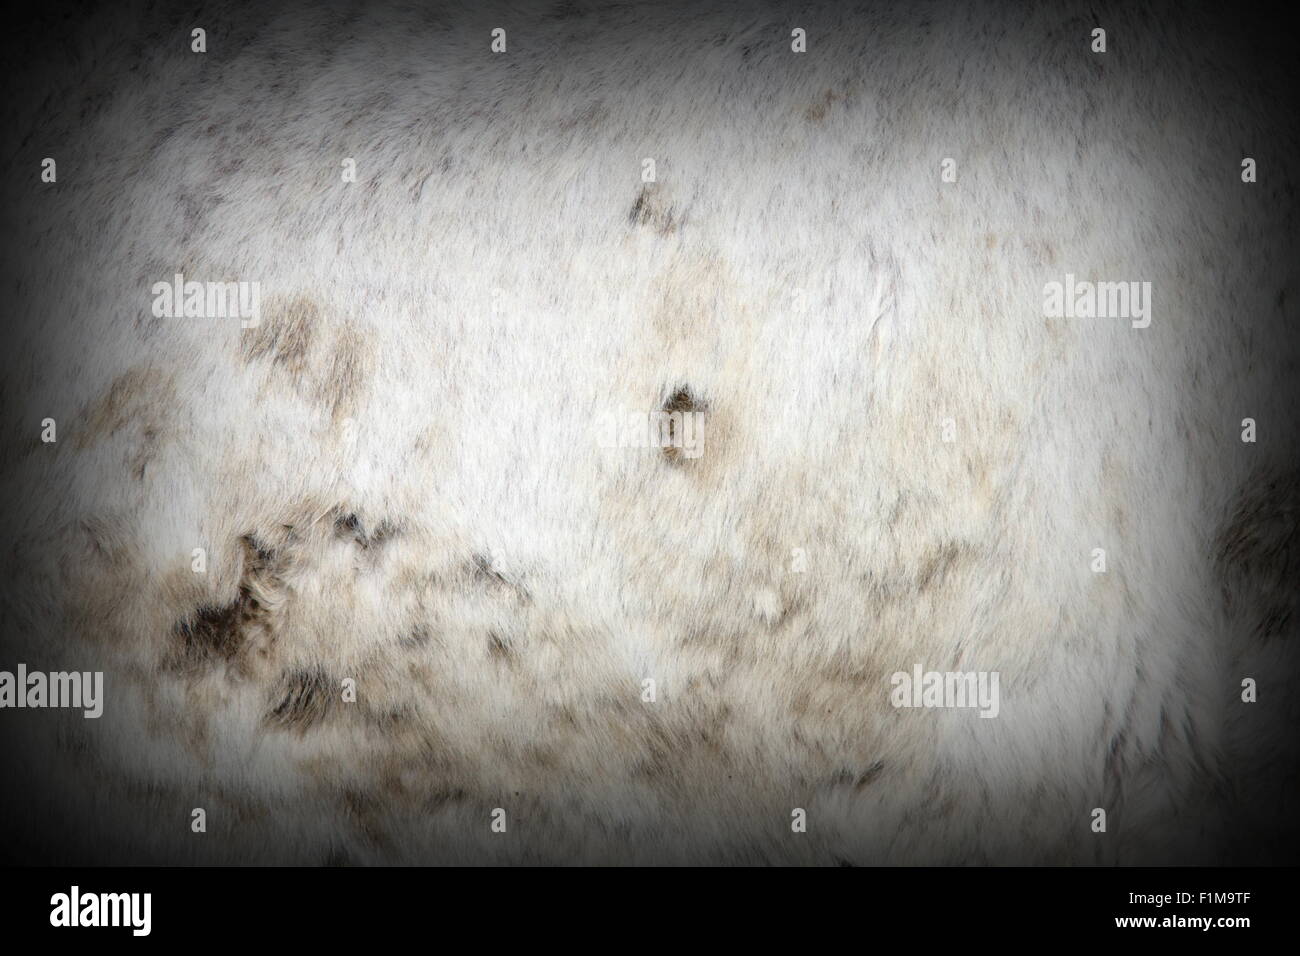 Dettaglio di un fangoso cavallo bianco pelle non conciata con vignette Foto Stock